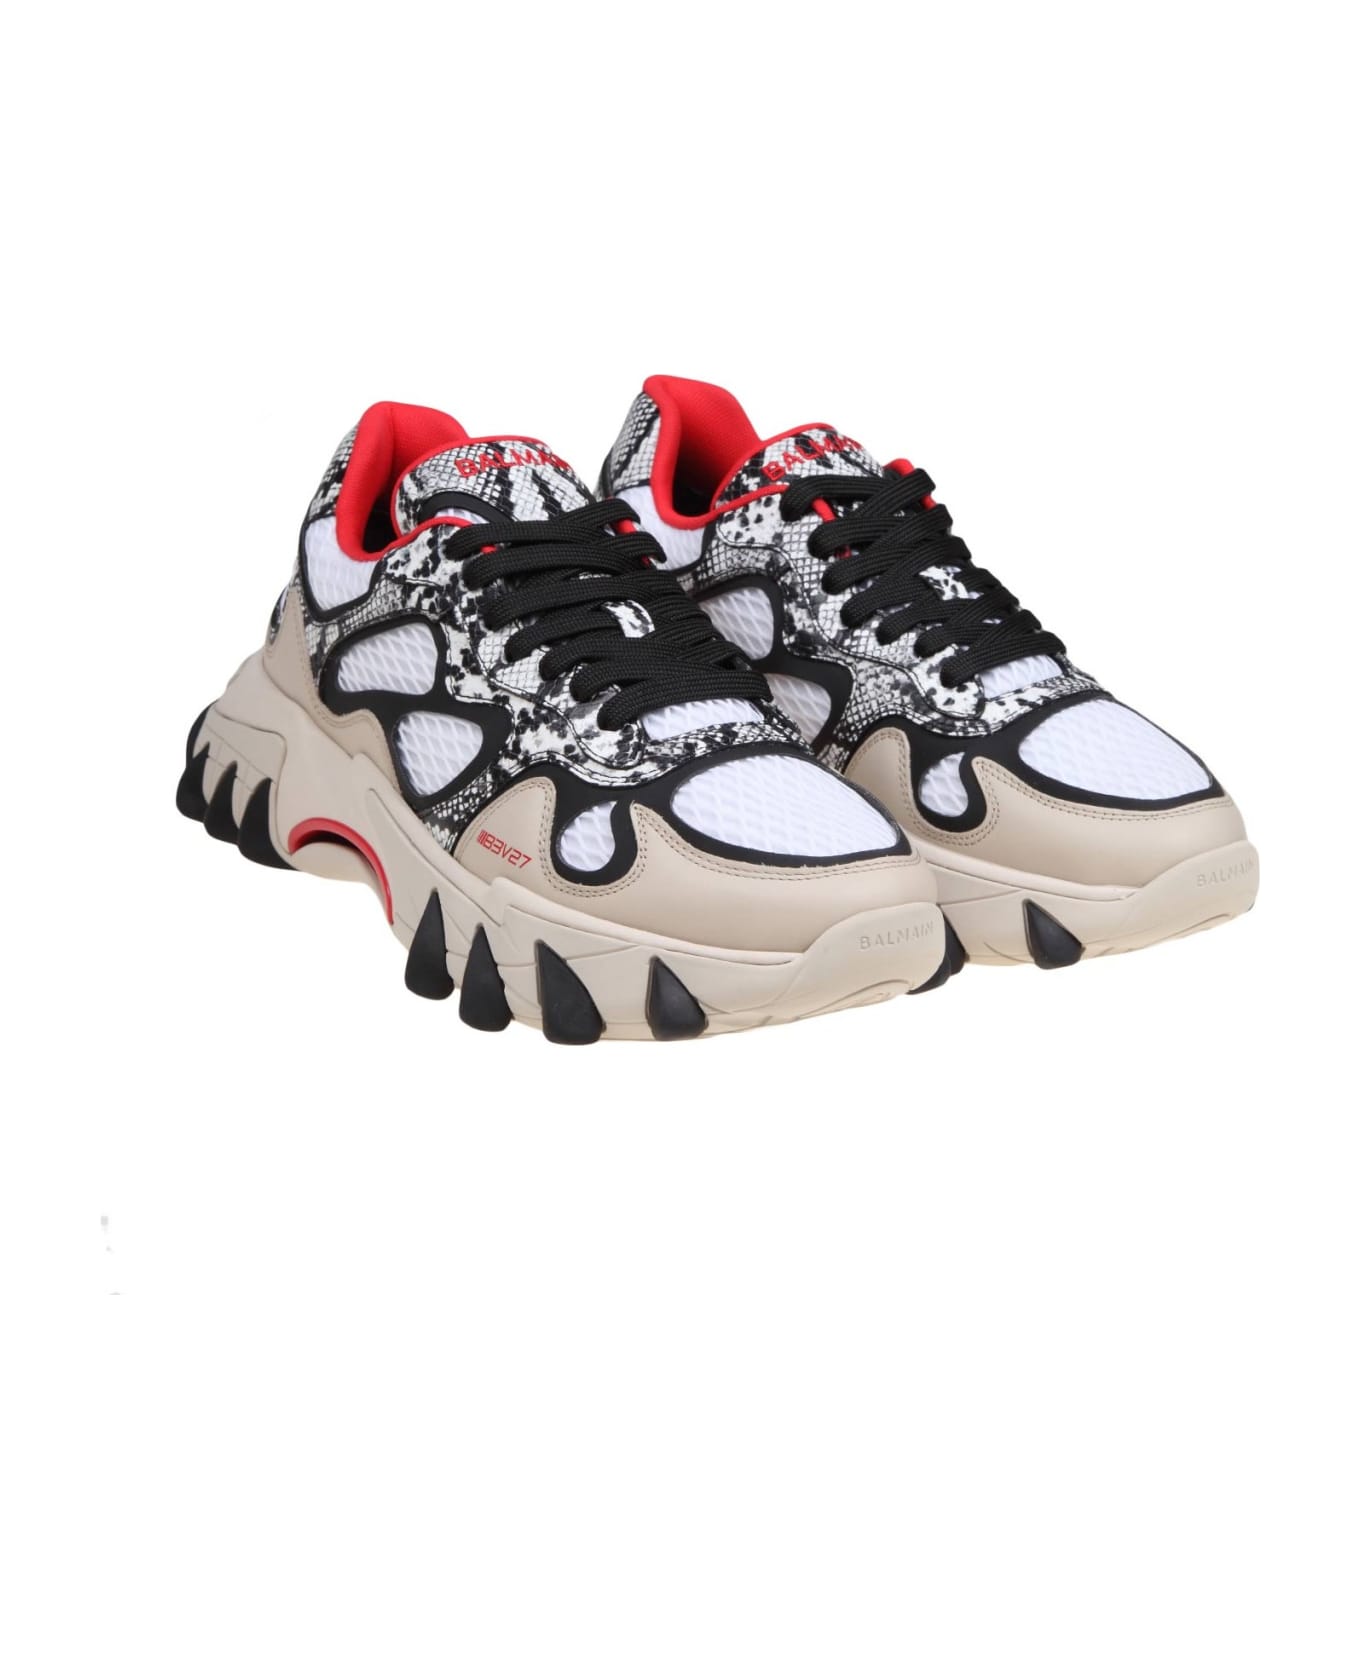 Balmain B-east Sneakers - Grey/Red